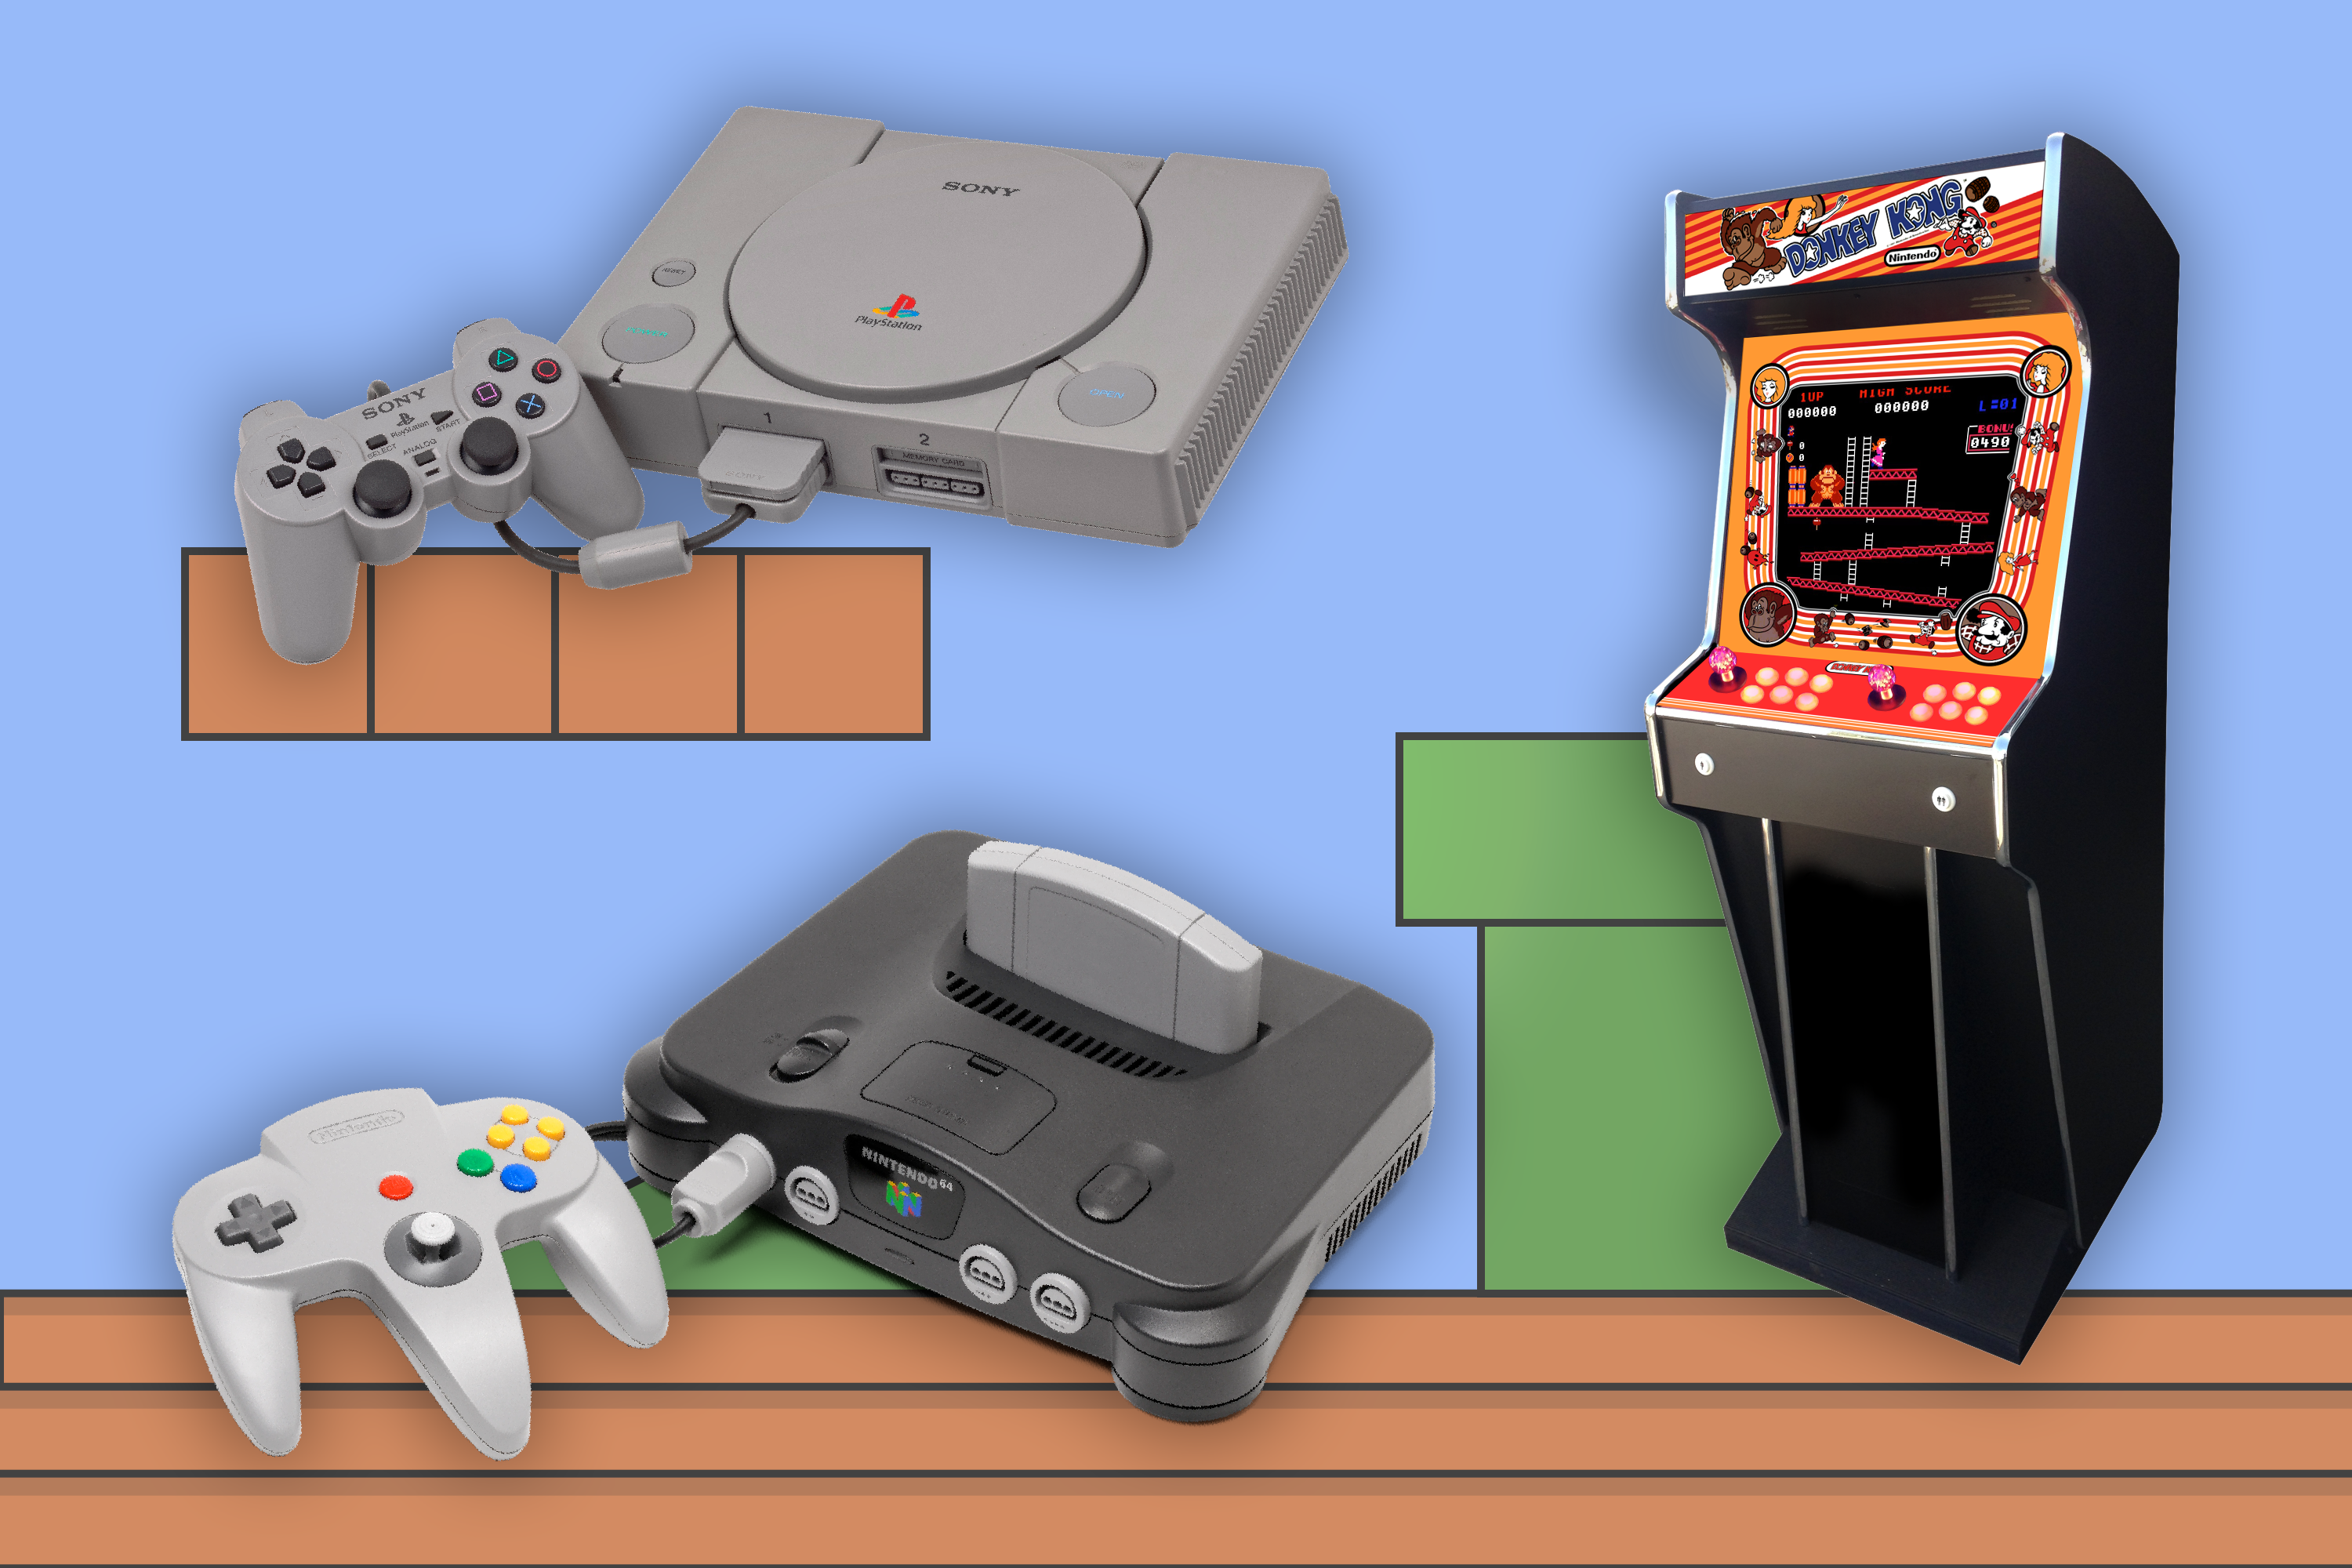 Platform game - Wikipedia  Sega games, Platform game, Classic video games